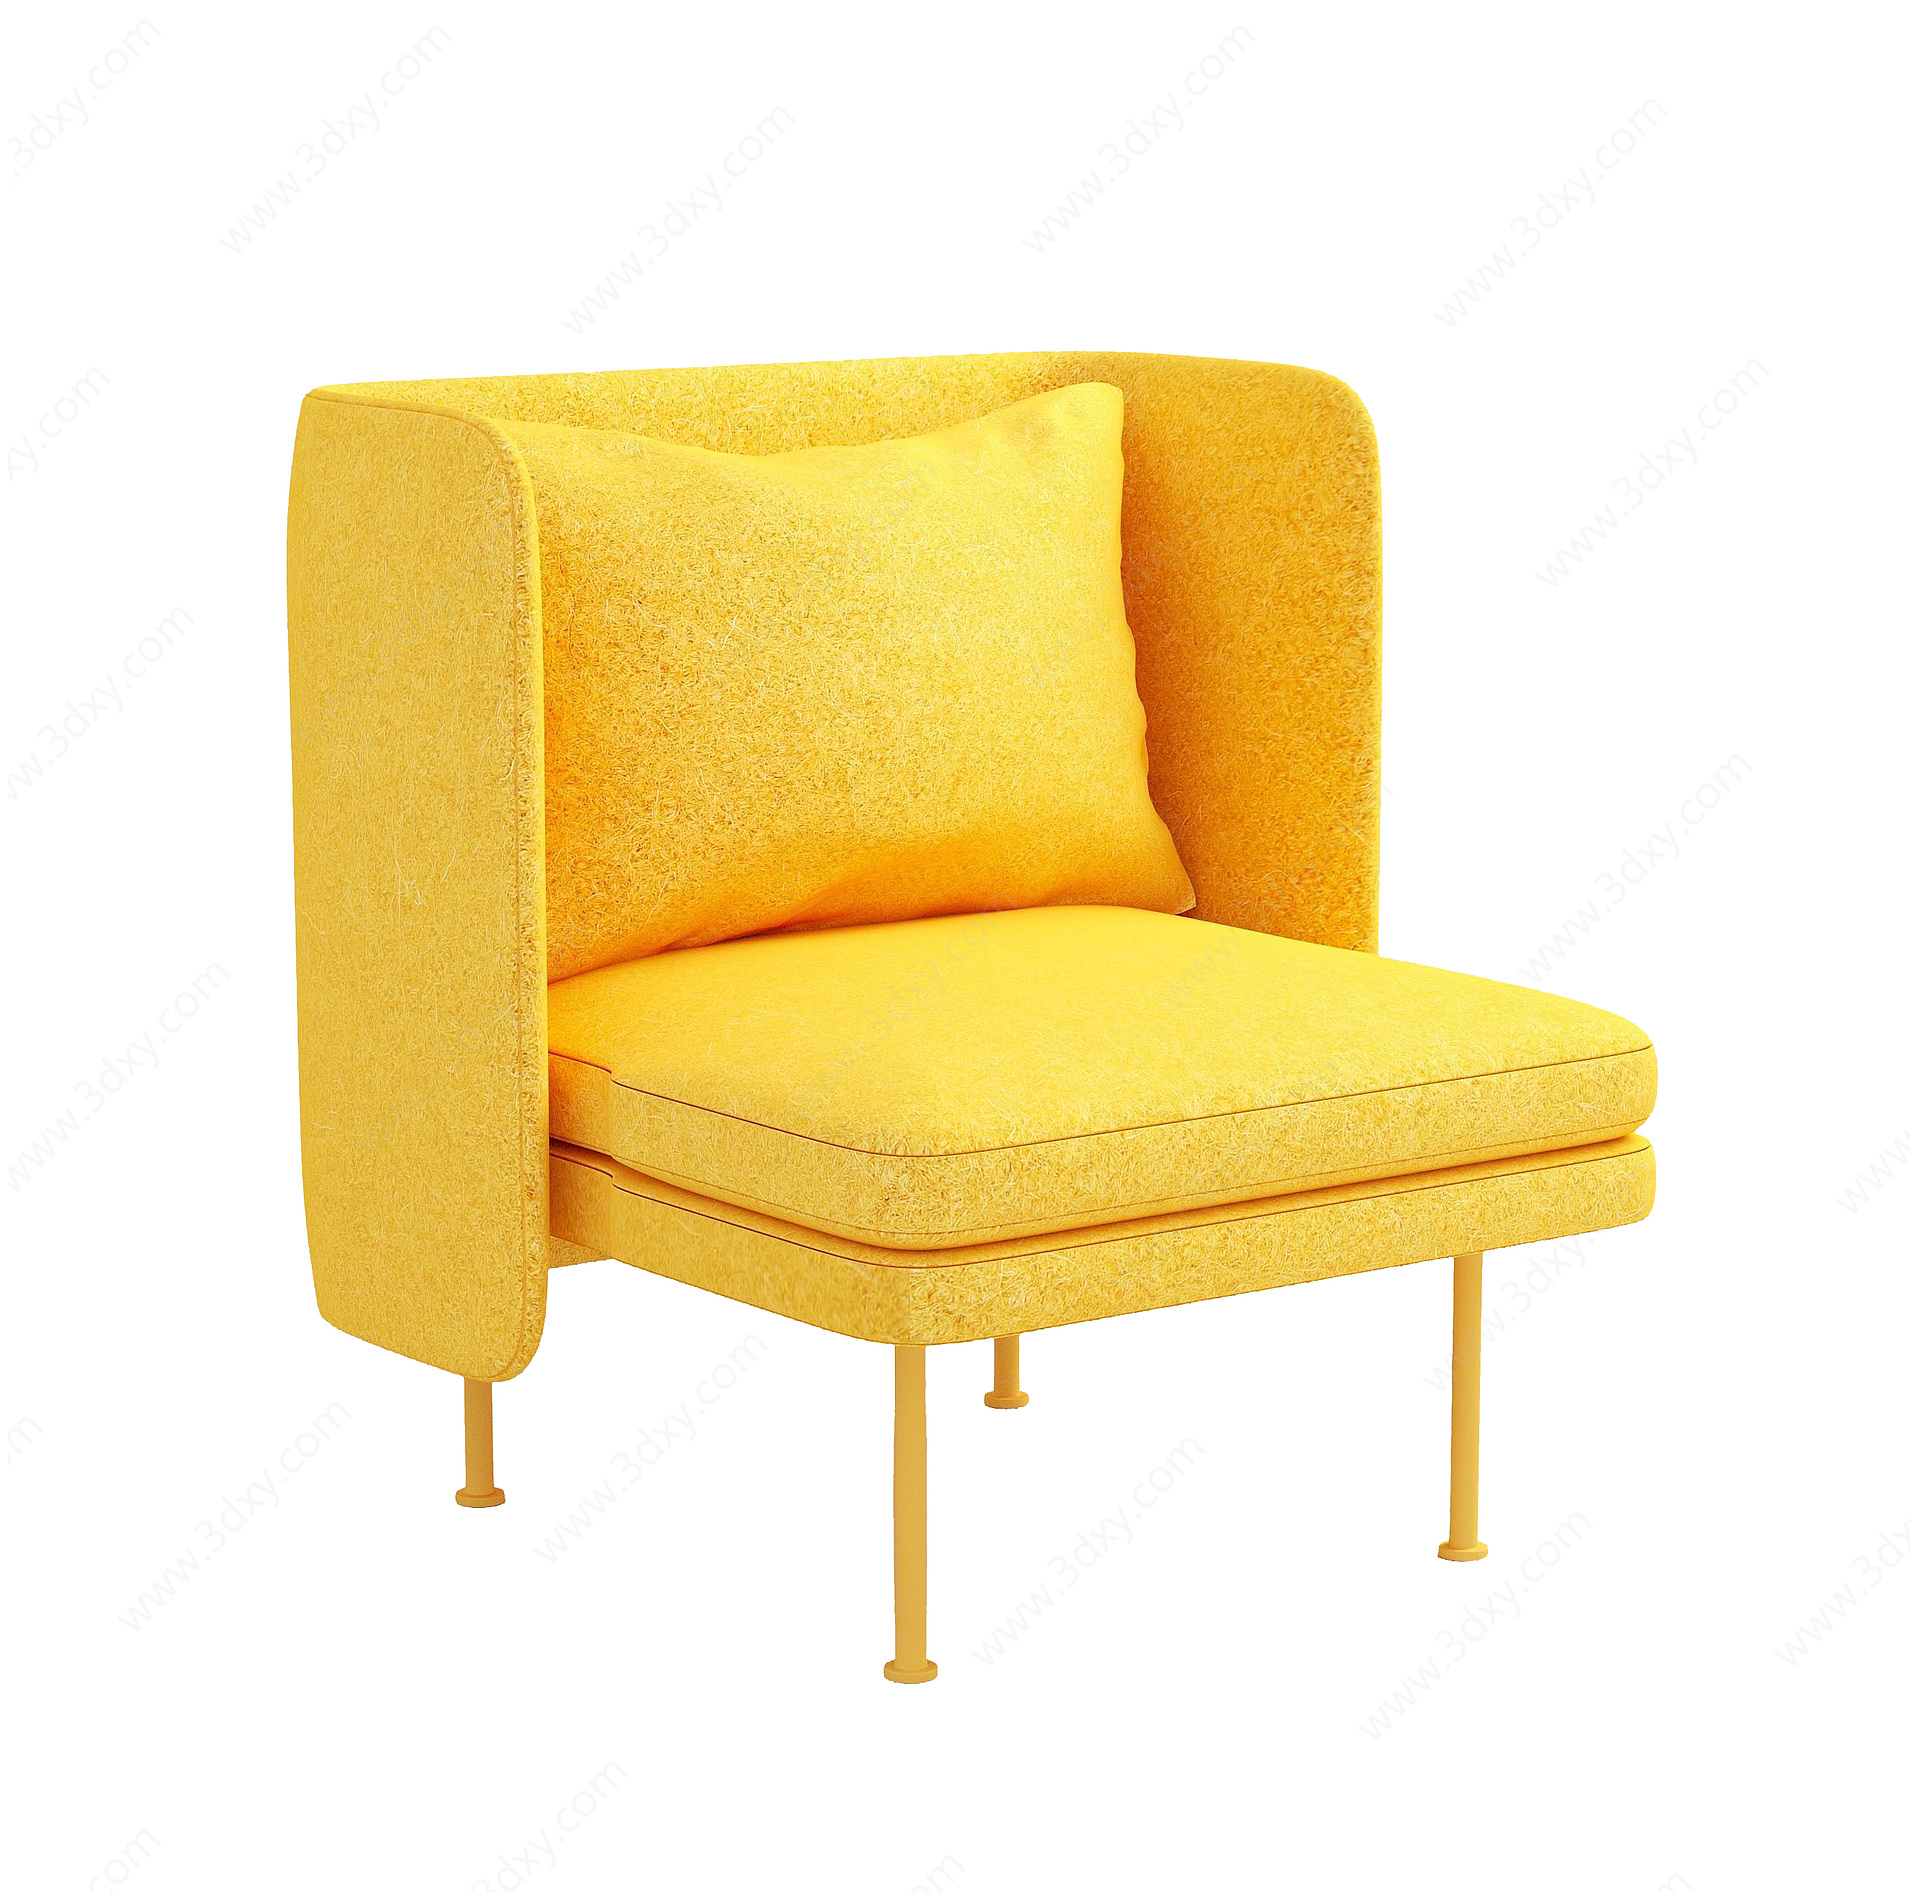 轻奢懒人休闲单人沙发靠椅3D模型